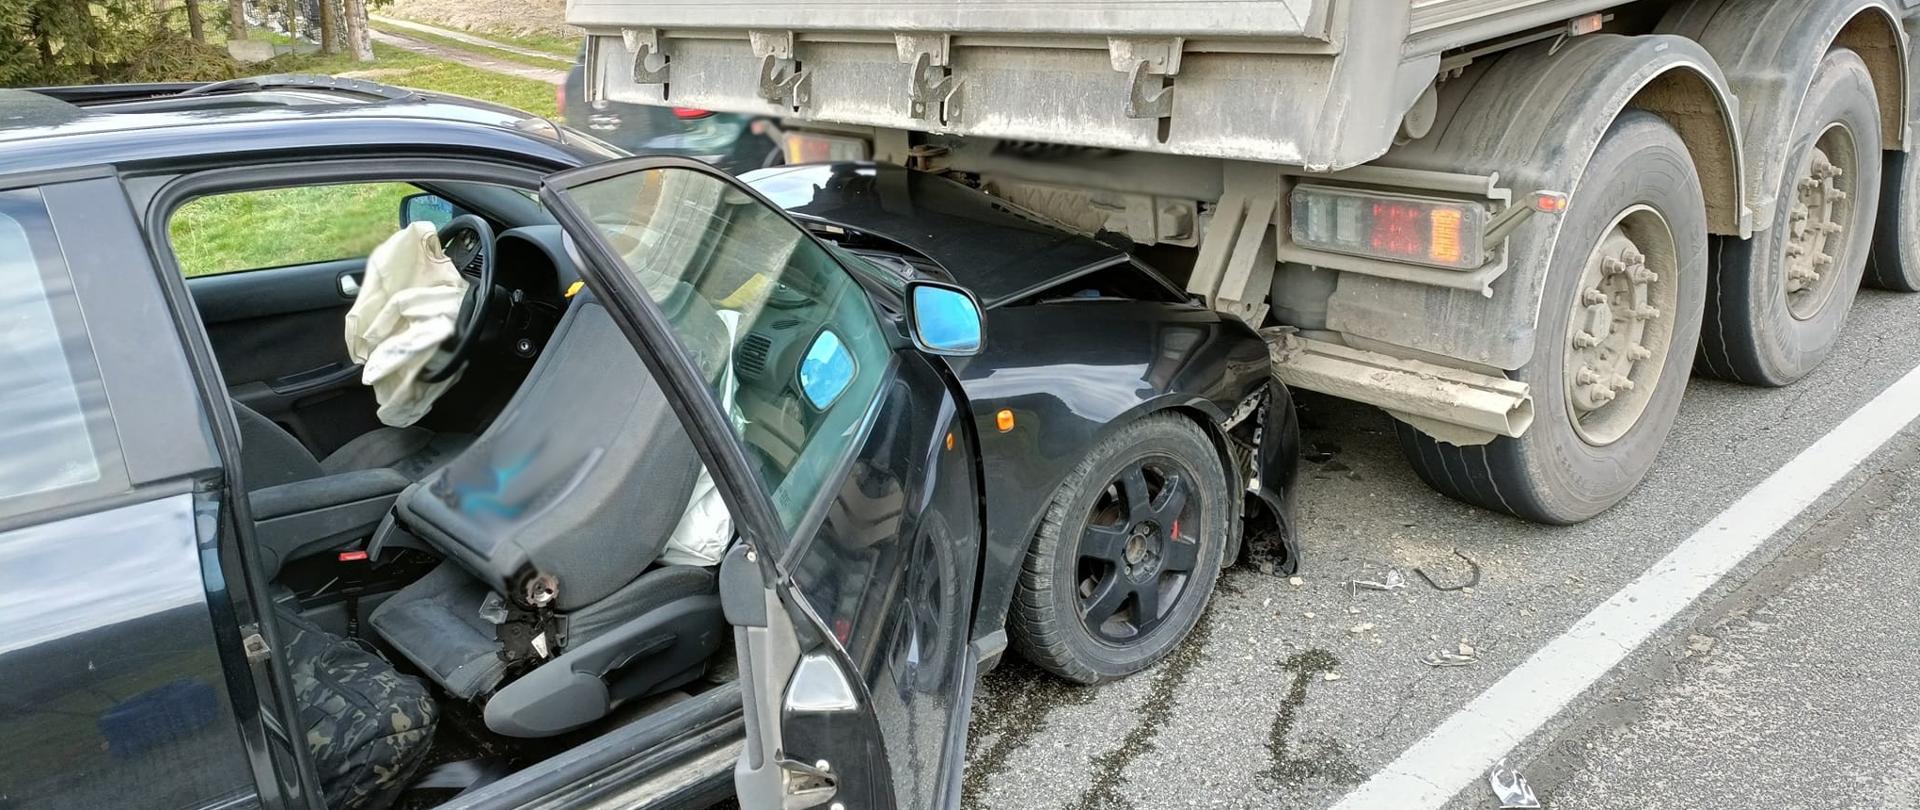 Samochód osobowy ciemnego koloru uderzył w tył samochodu ciężarowego